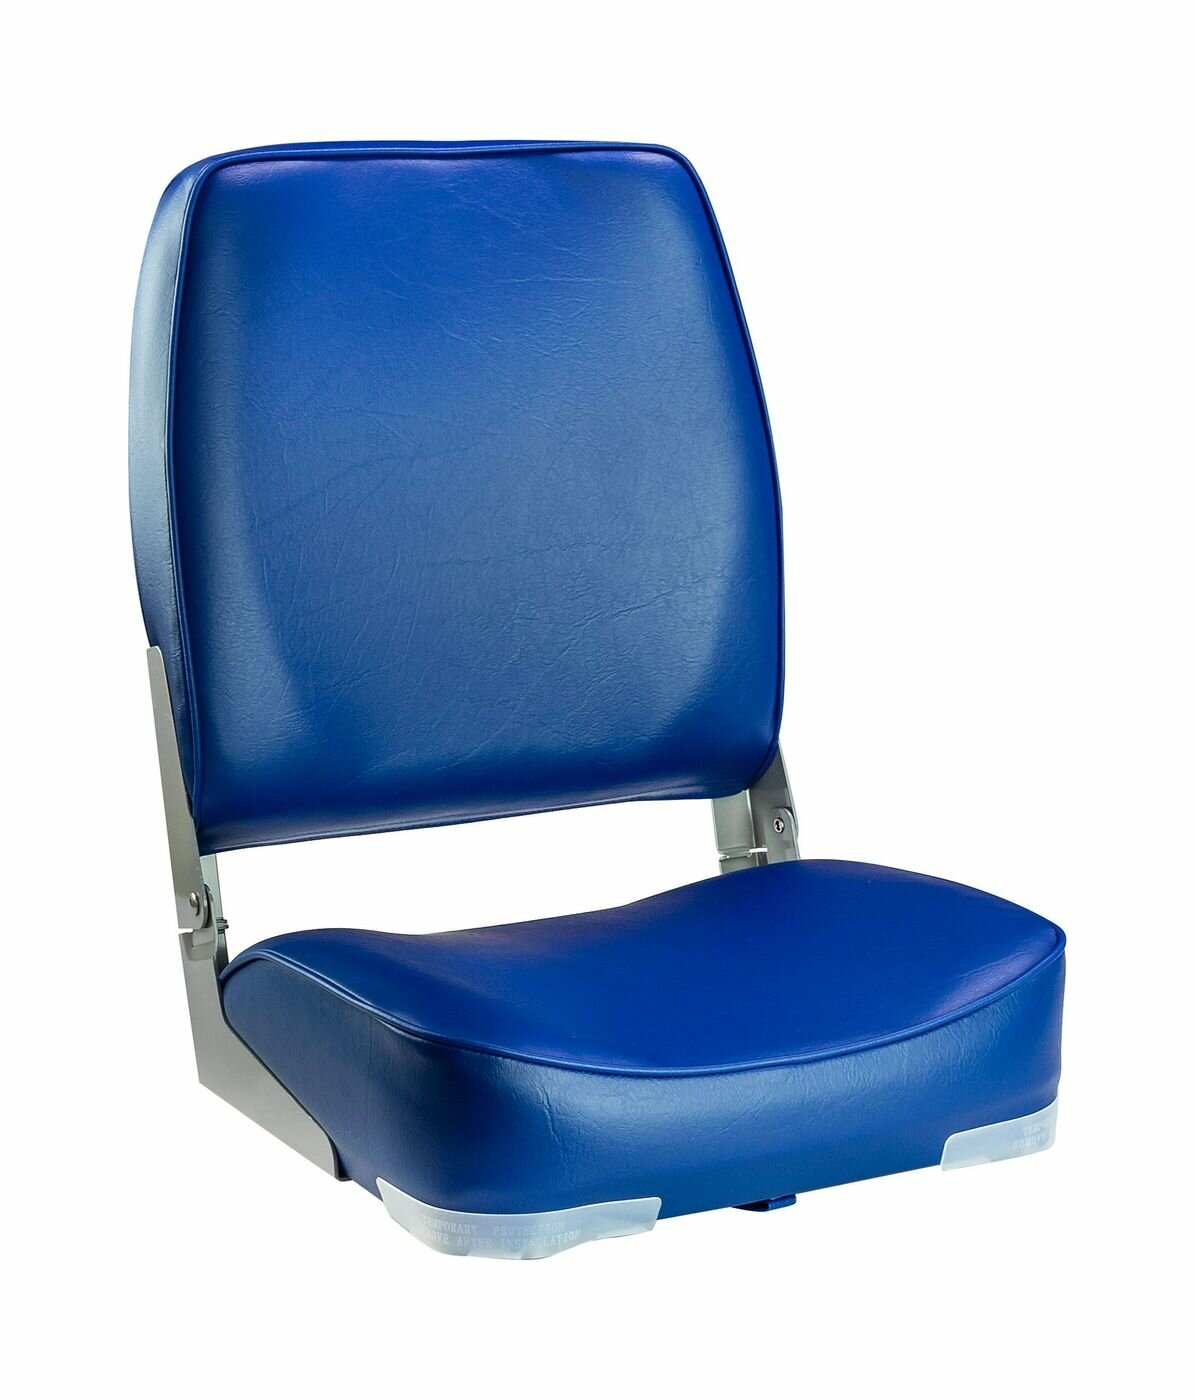 Кресло мягкое складное, высокая спинка, обивка винил, цвет синий, Marine Rocket 75127B-MR - фотография № 1